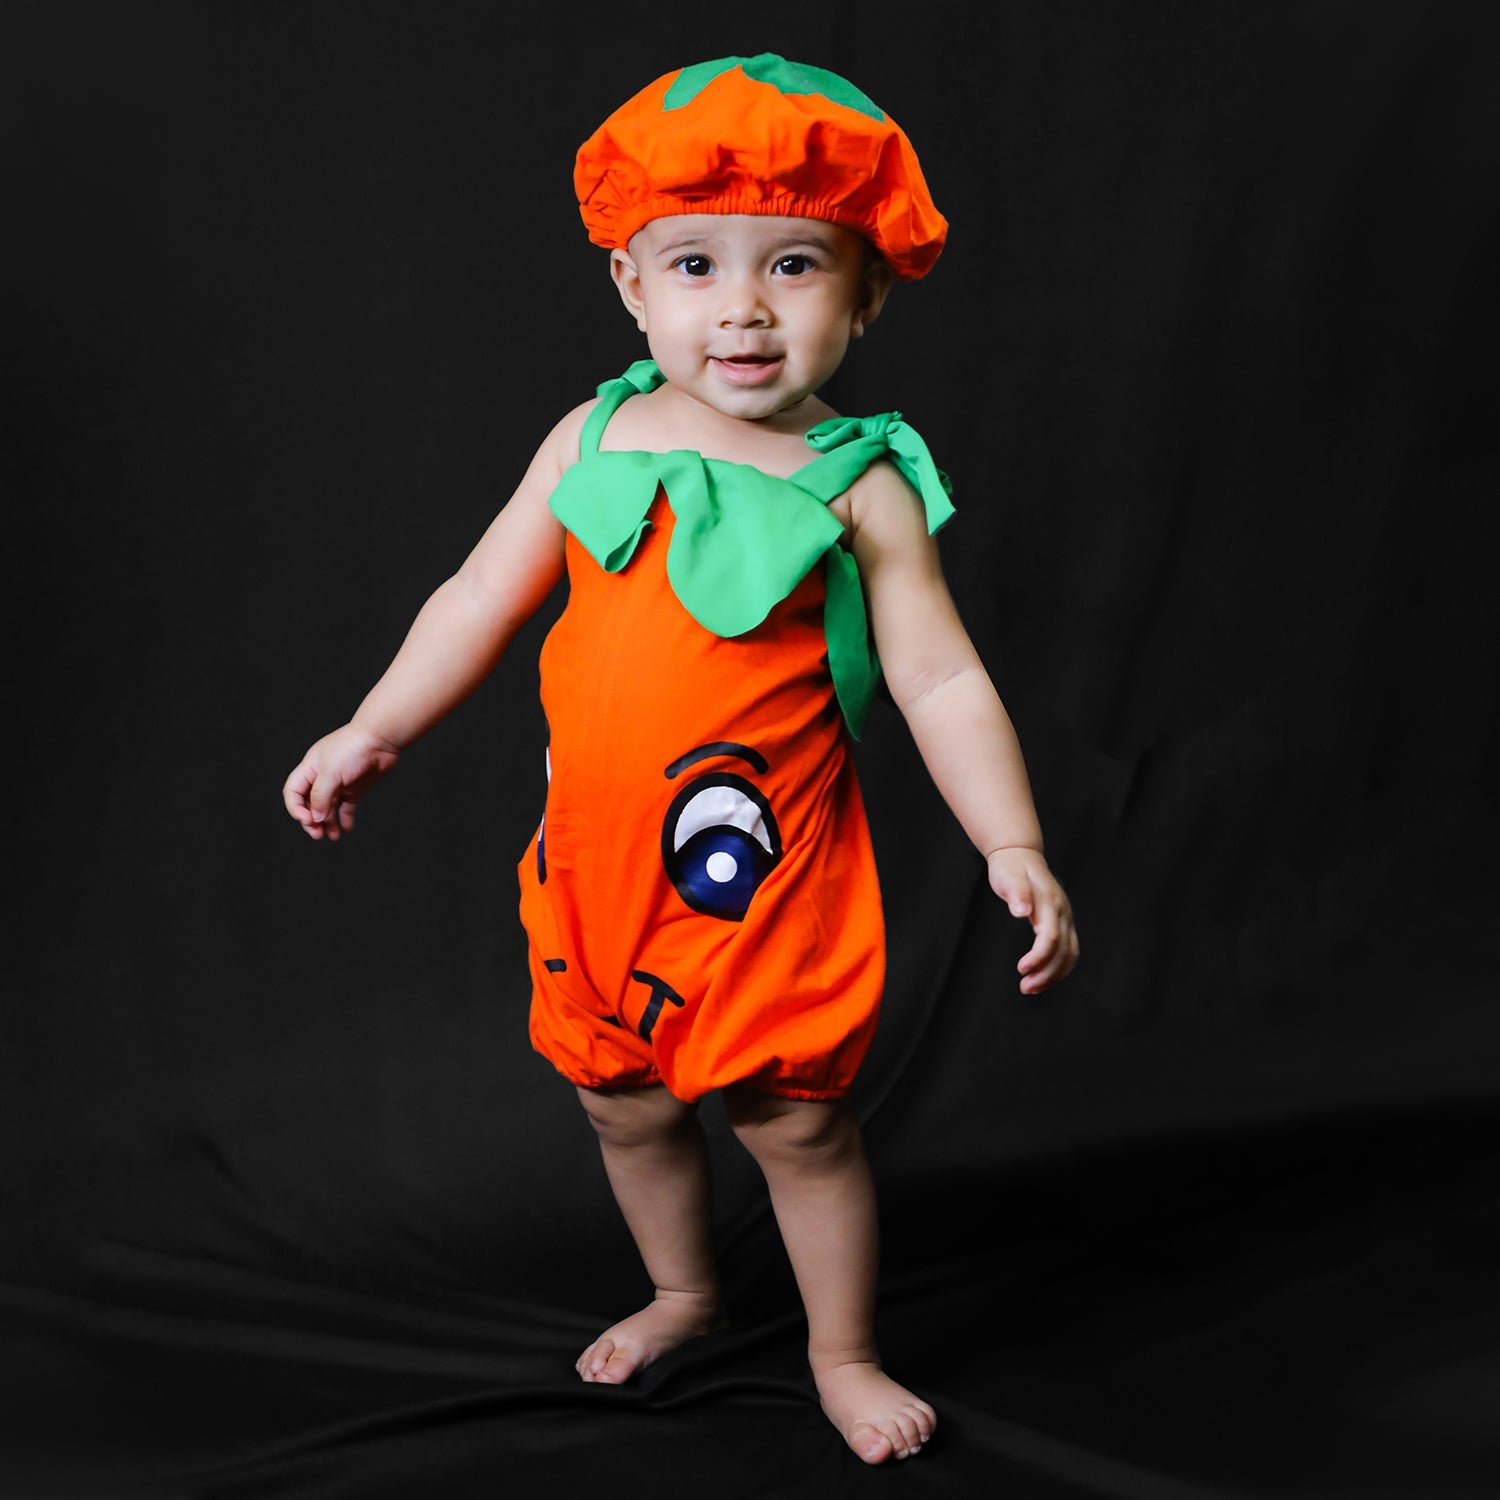 Baby Moo Orange Fruit Themed Costume 2pcs Cap And Fancy Dress - Orange - Baby Moo